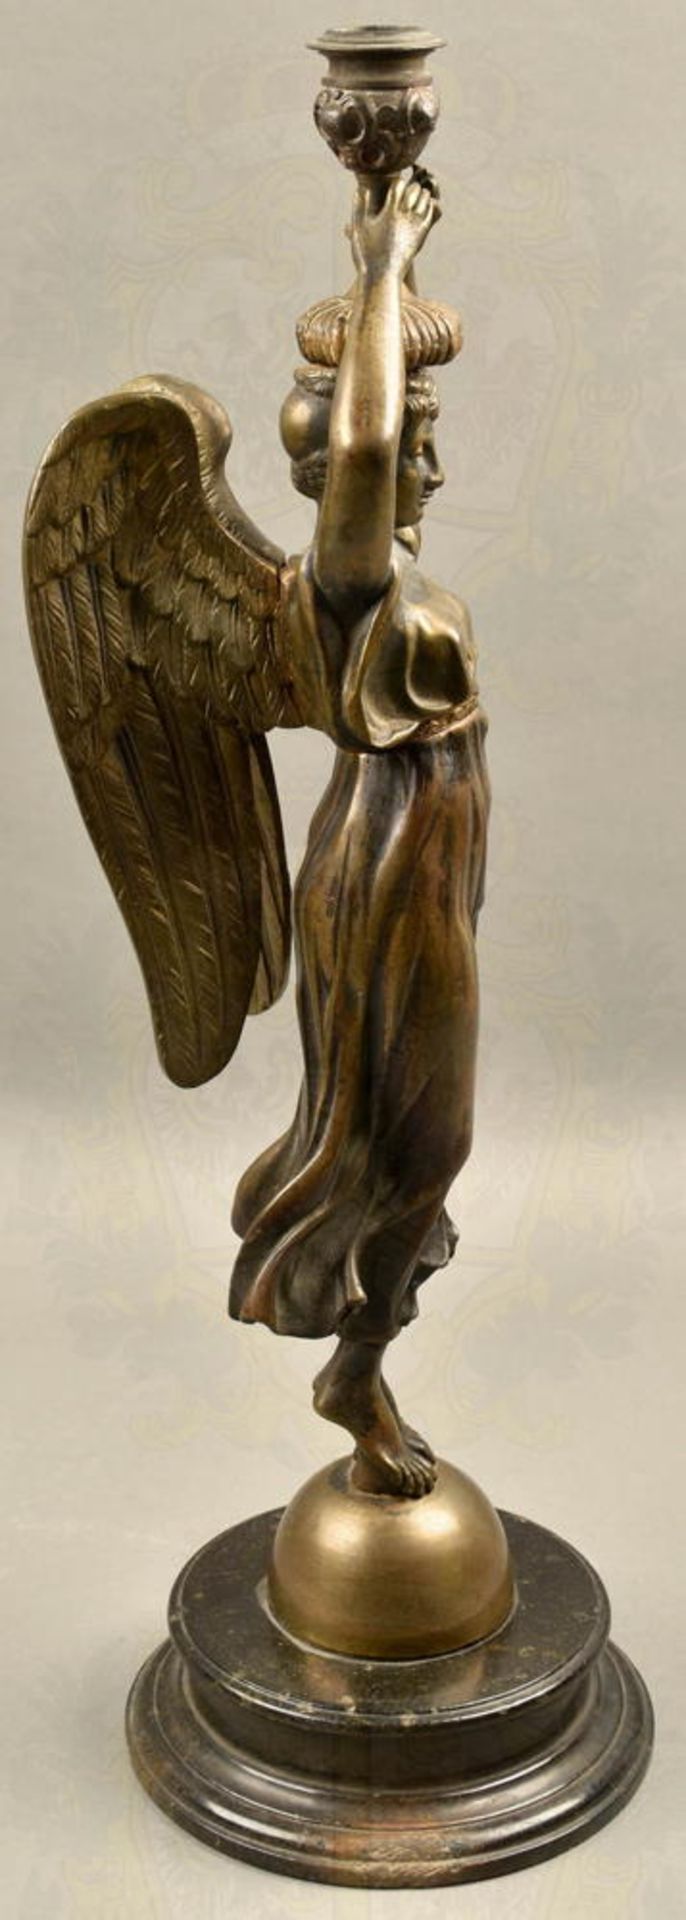 Bronzeplastik Engel mit Kerzenhalter auf Steinsockel - Bild 3 aus 4